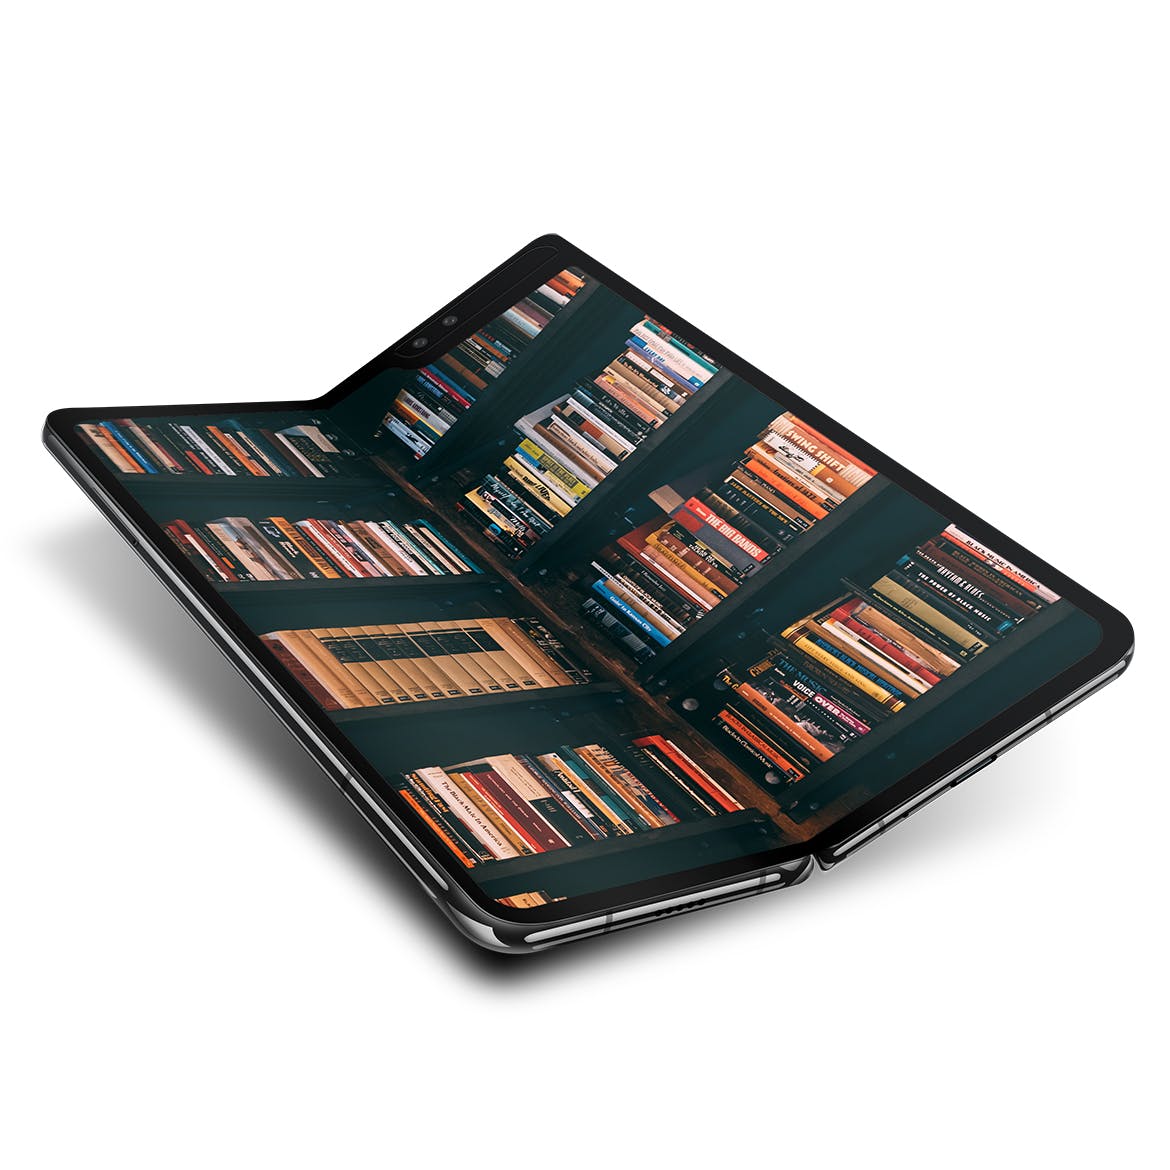 超级酷炫全新折叠屏手机样机下载[PSD]设计素材模板